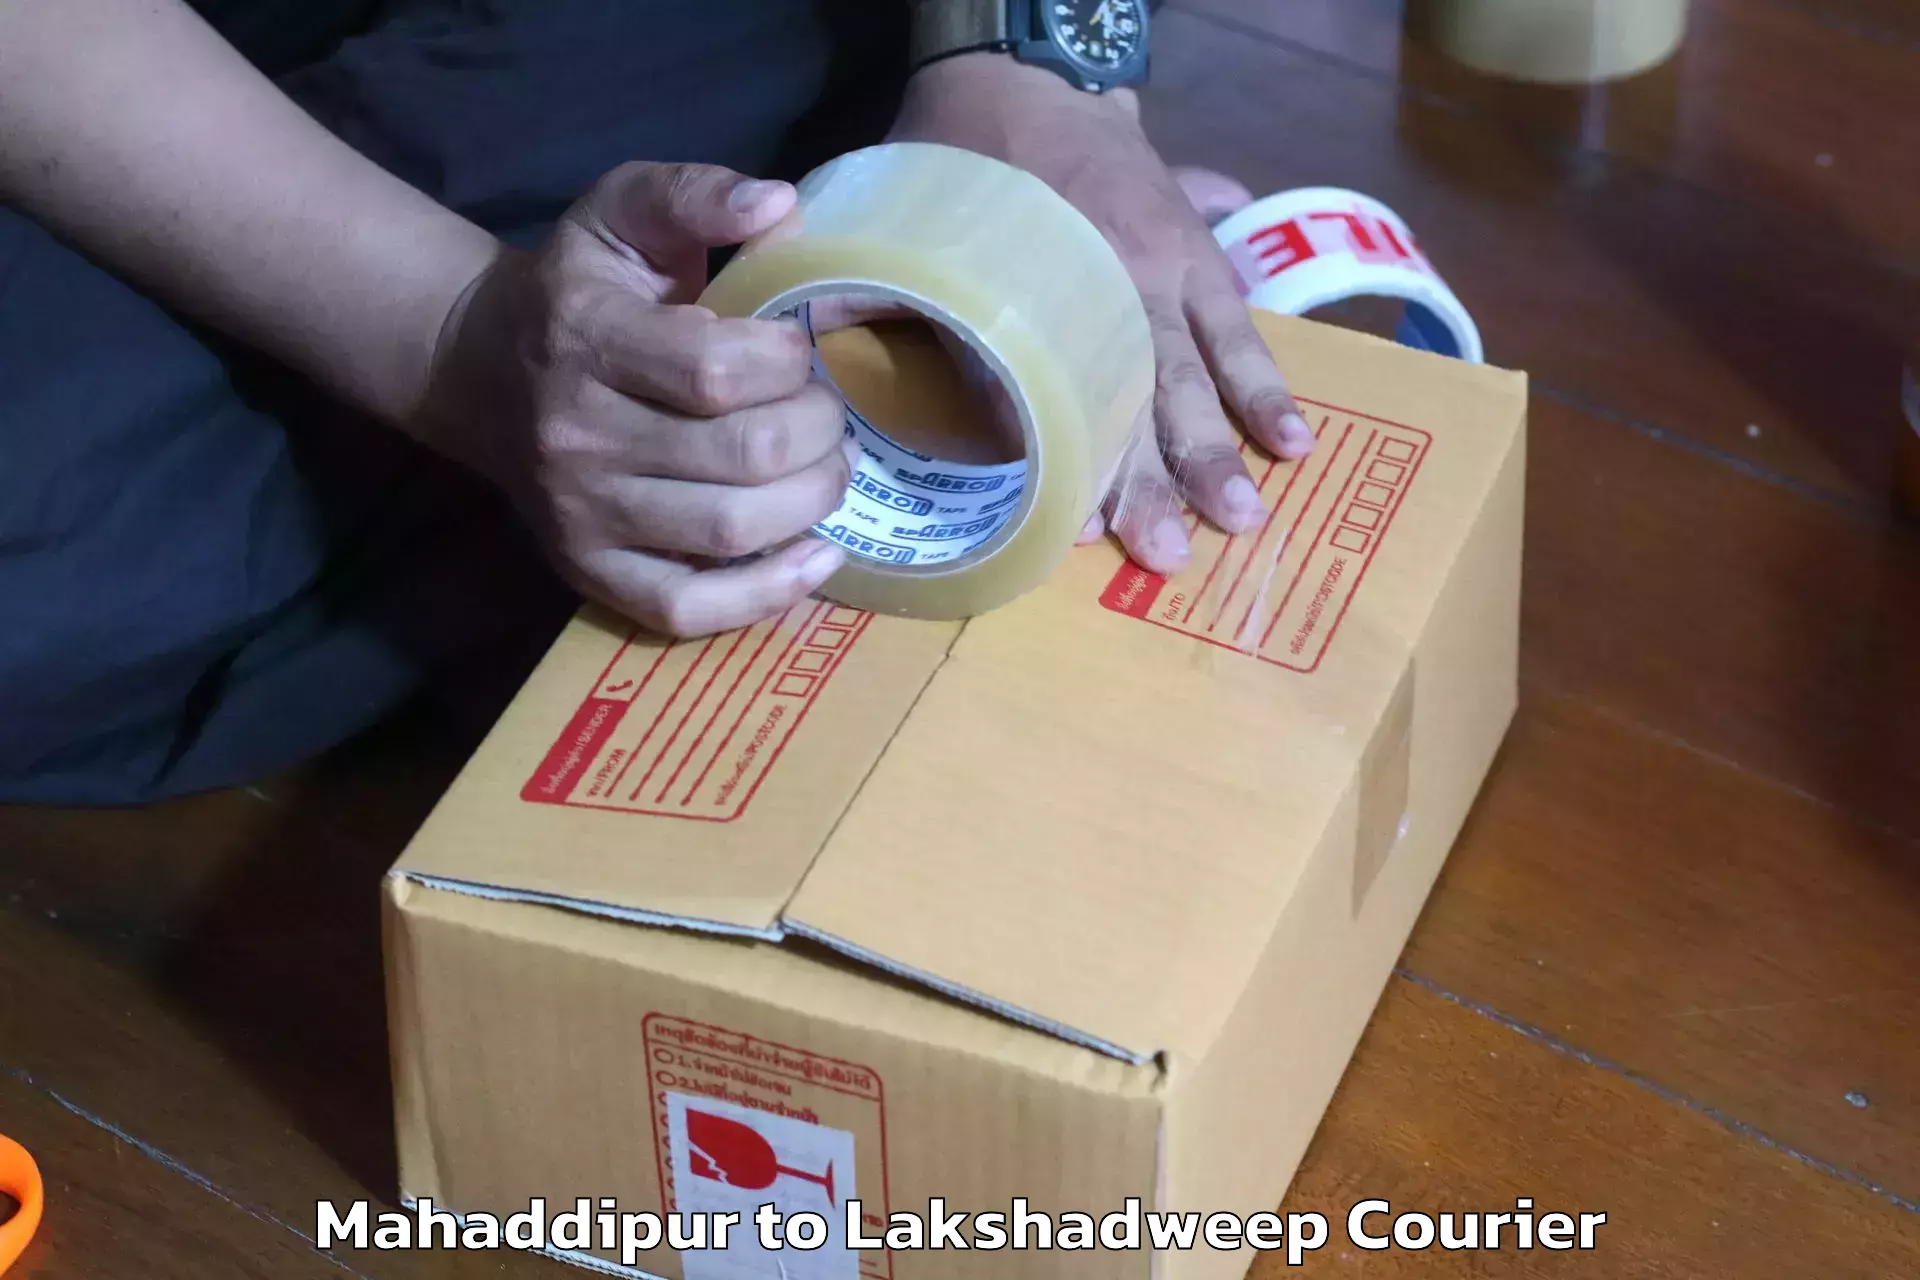 Expert furniture transport Mahaddipur to Lakshadweep